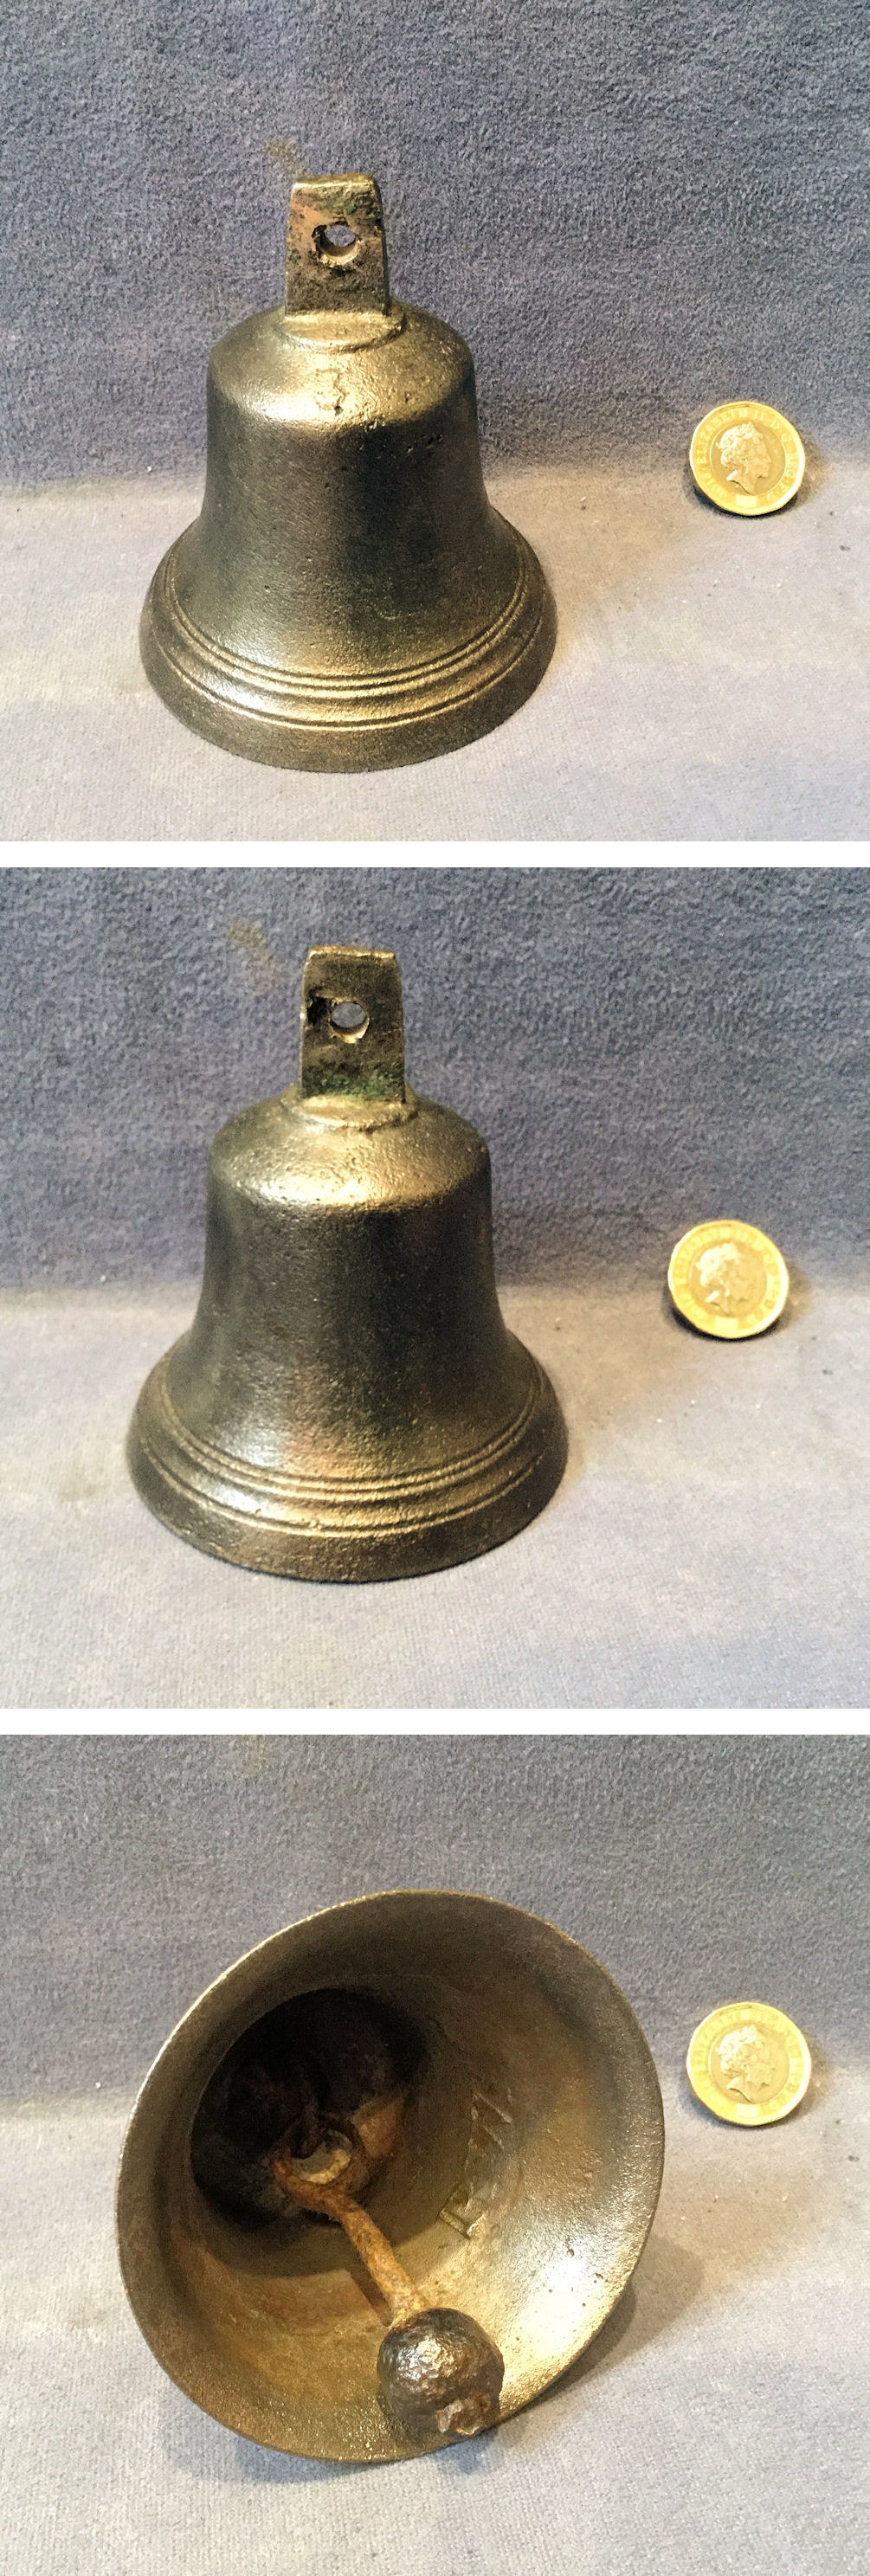 Clock Bell Lot K742 CAST BRASS BELL 1 3/4 INCH DIAMETER 